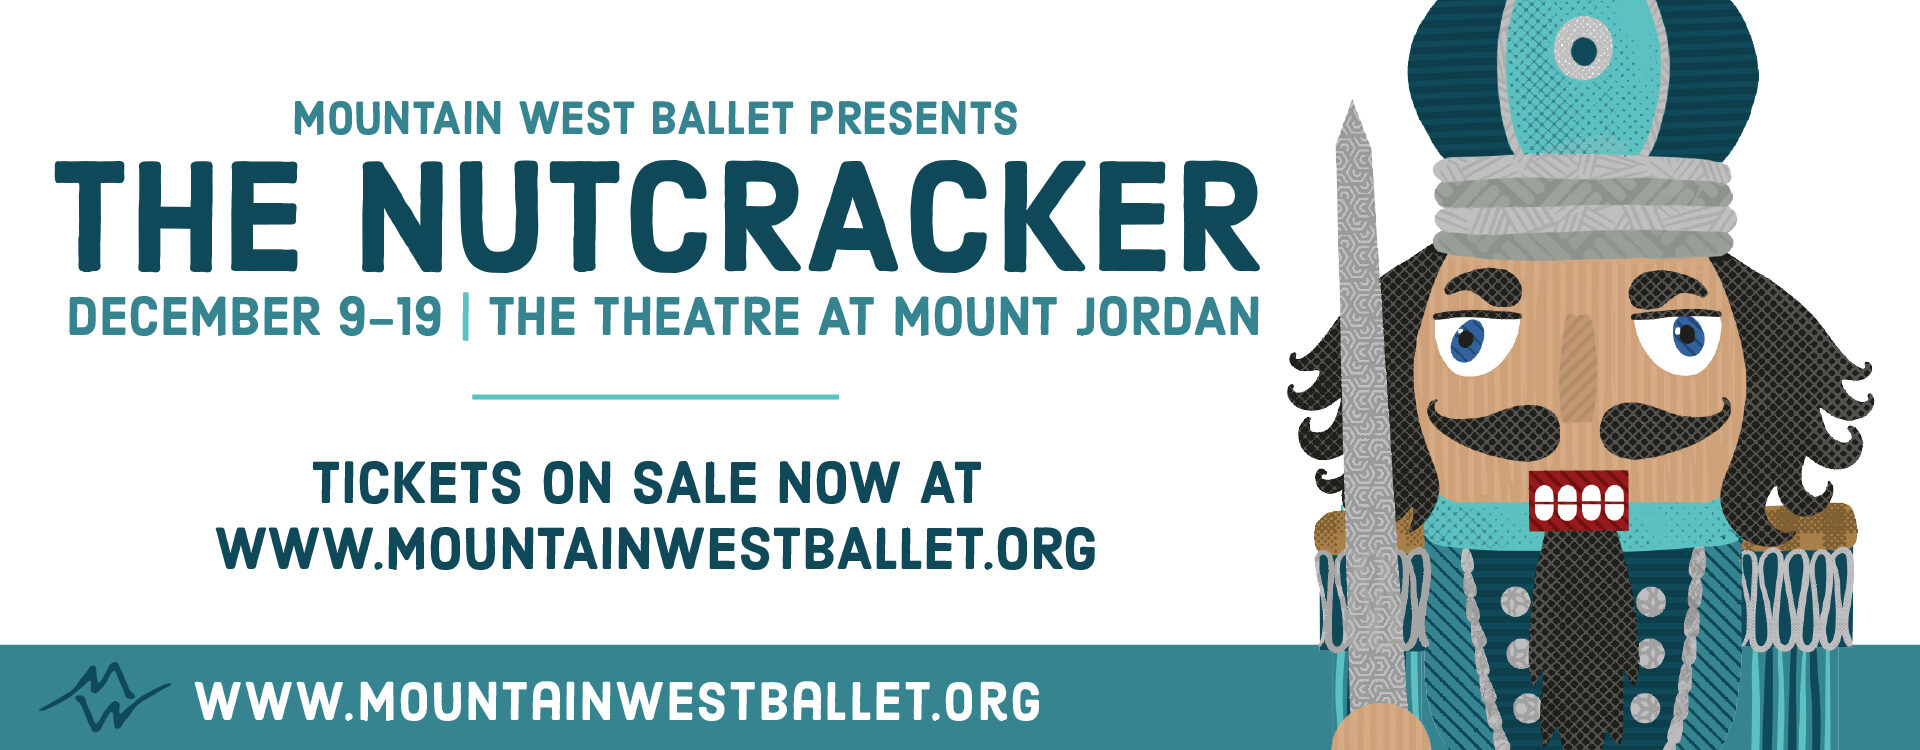 Mountain West Ballet: The Nutcracker